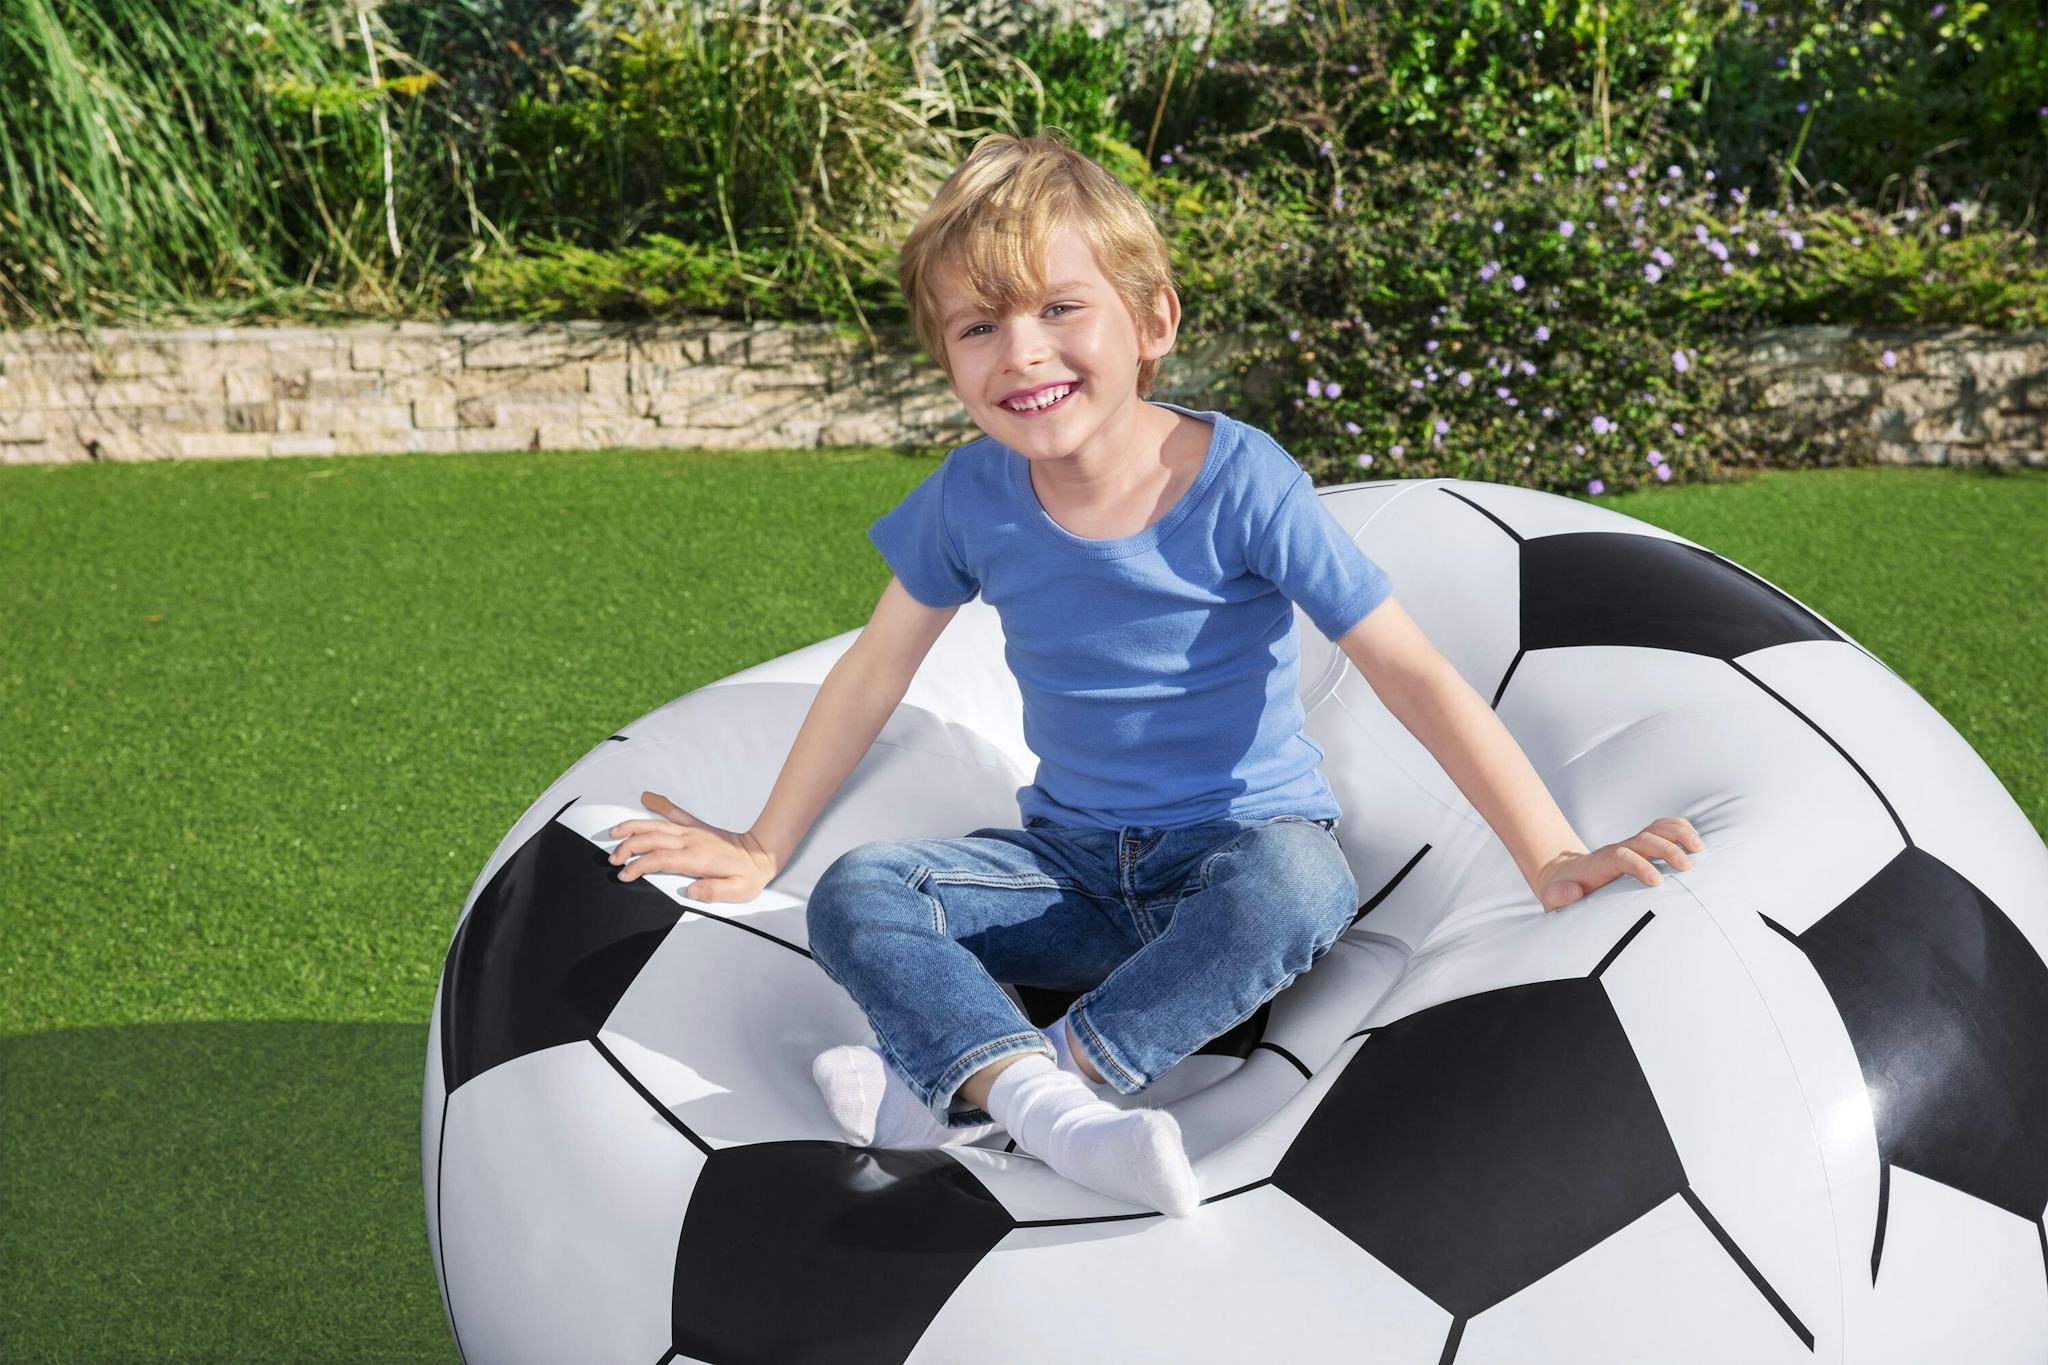 Giochi gonfiabili per bambini Poltrona pouf gonfiabile pallone da calcio Bestway 6